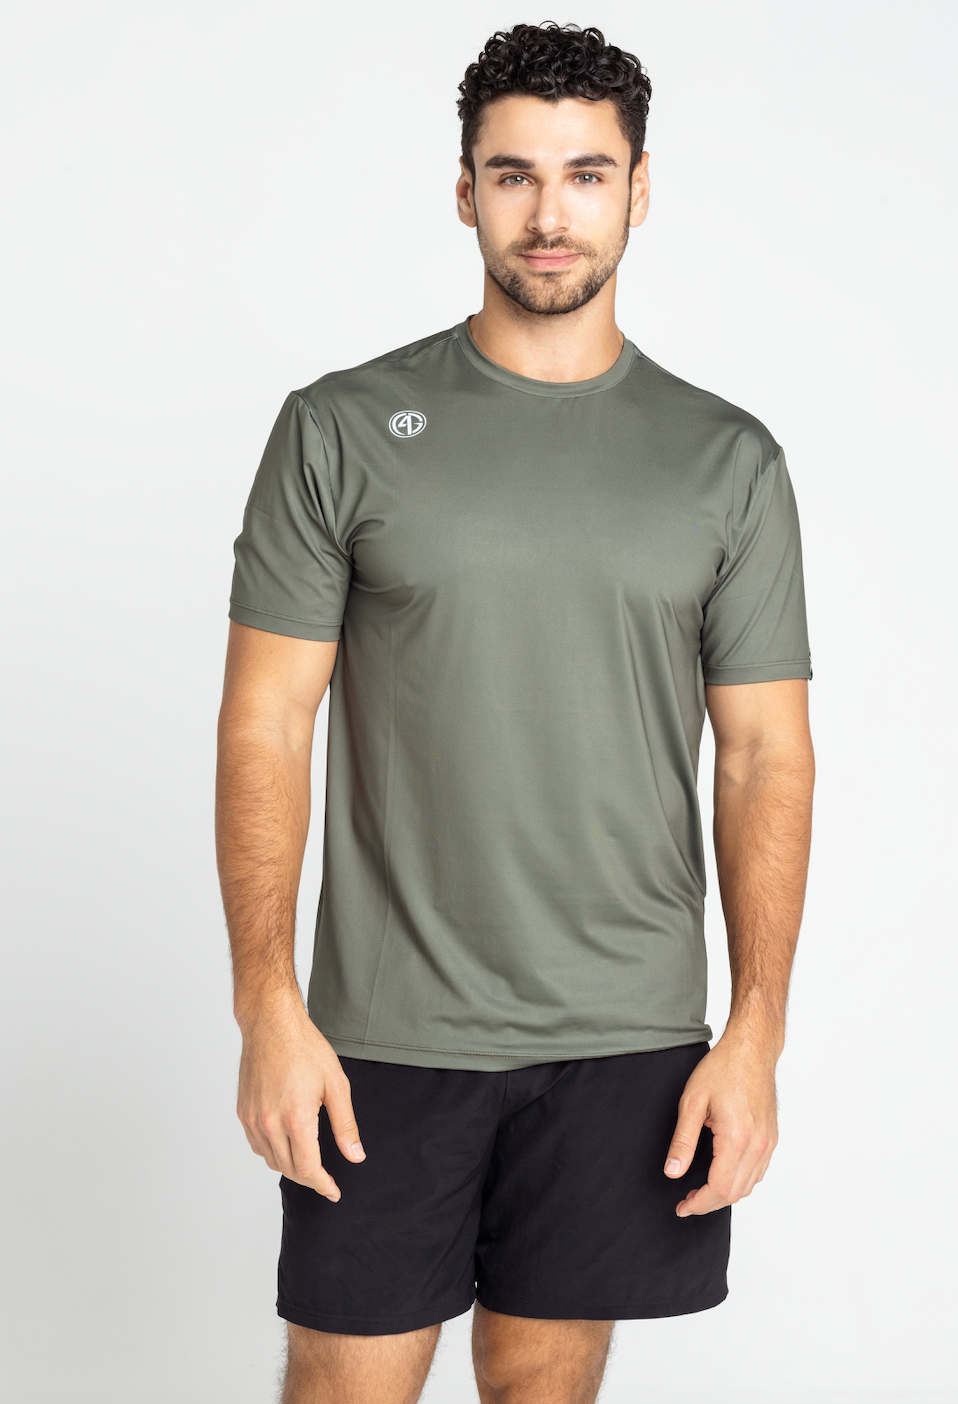 Short Sleeve Performance Shirt Forest Green